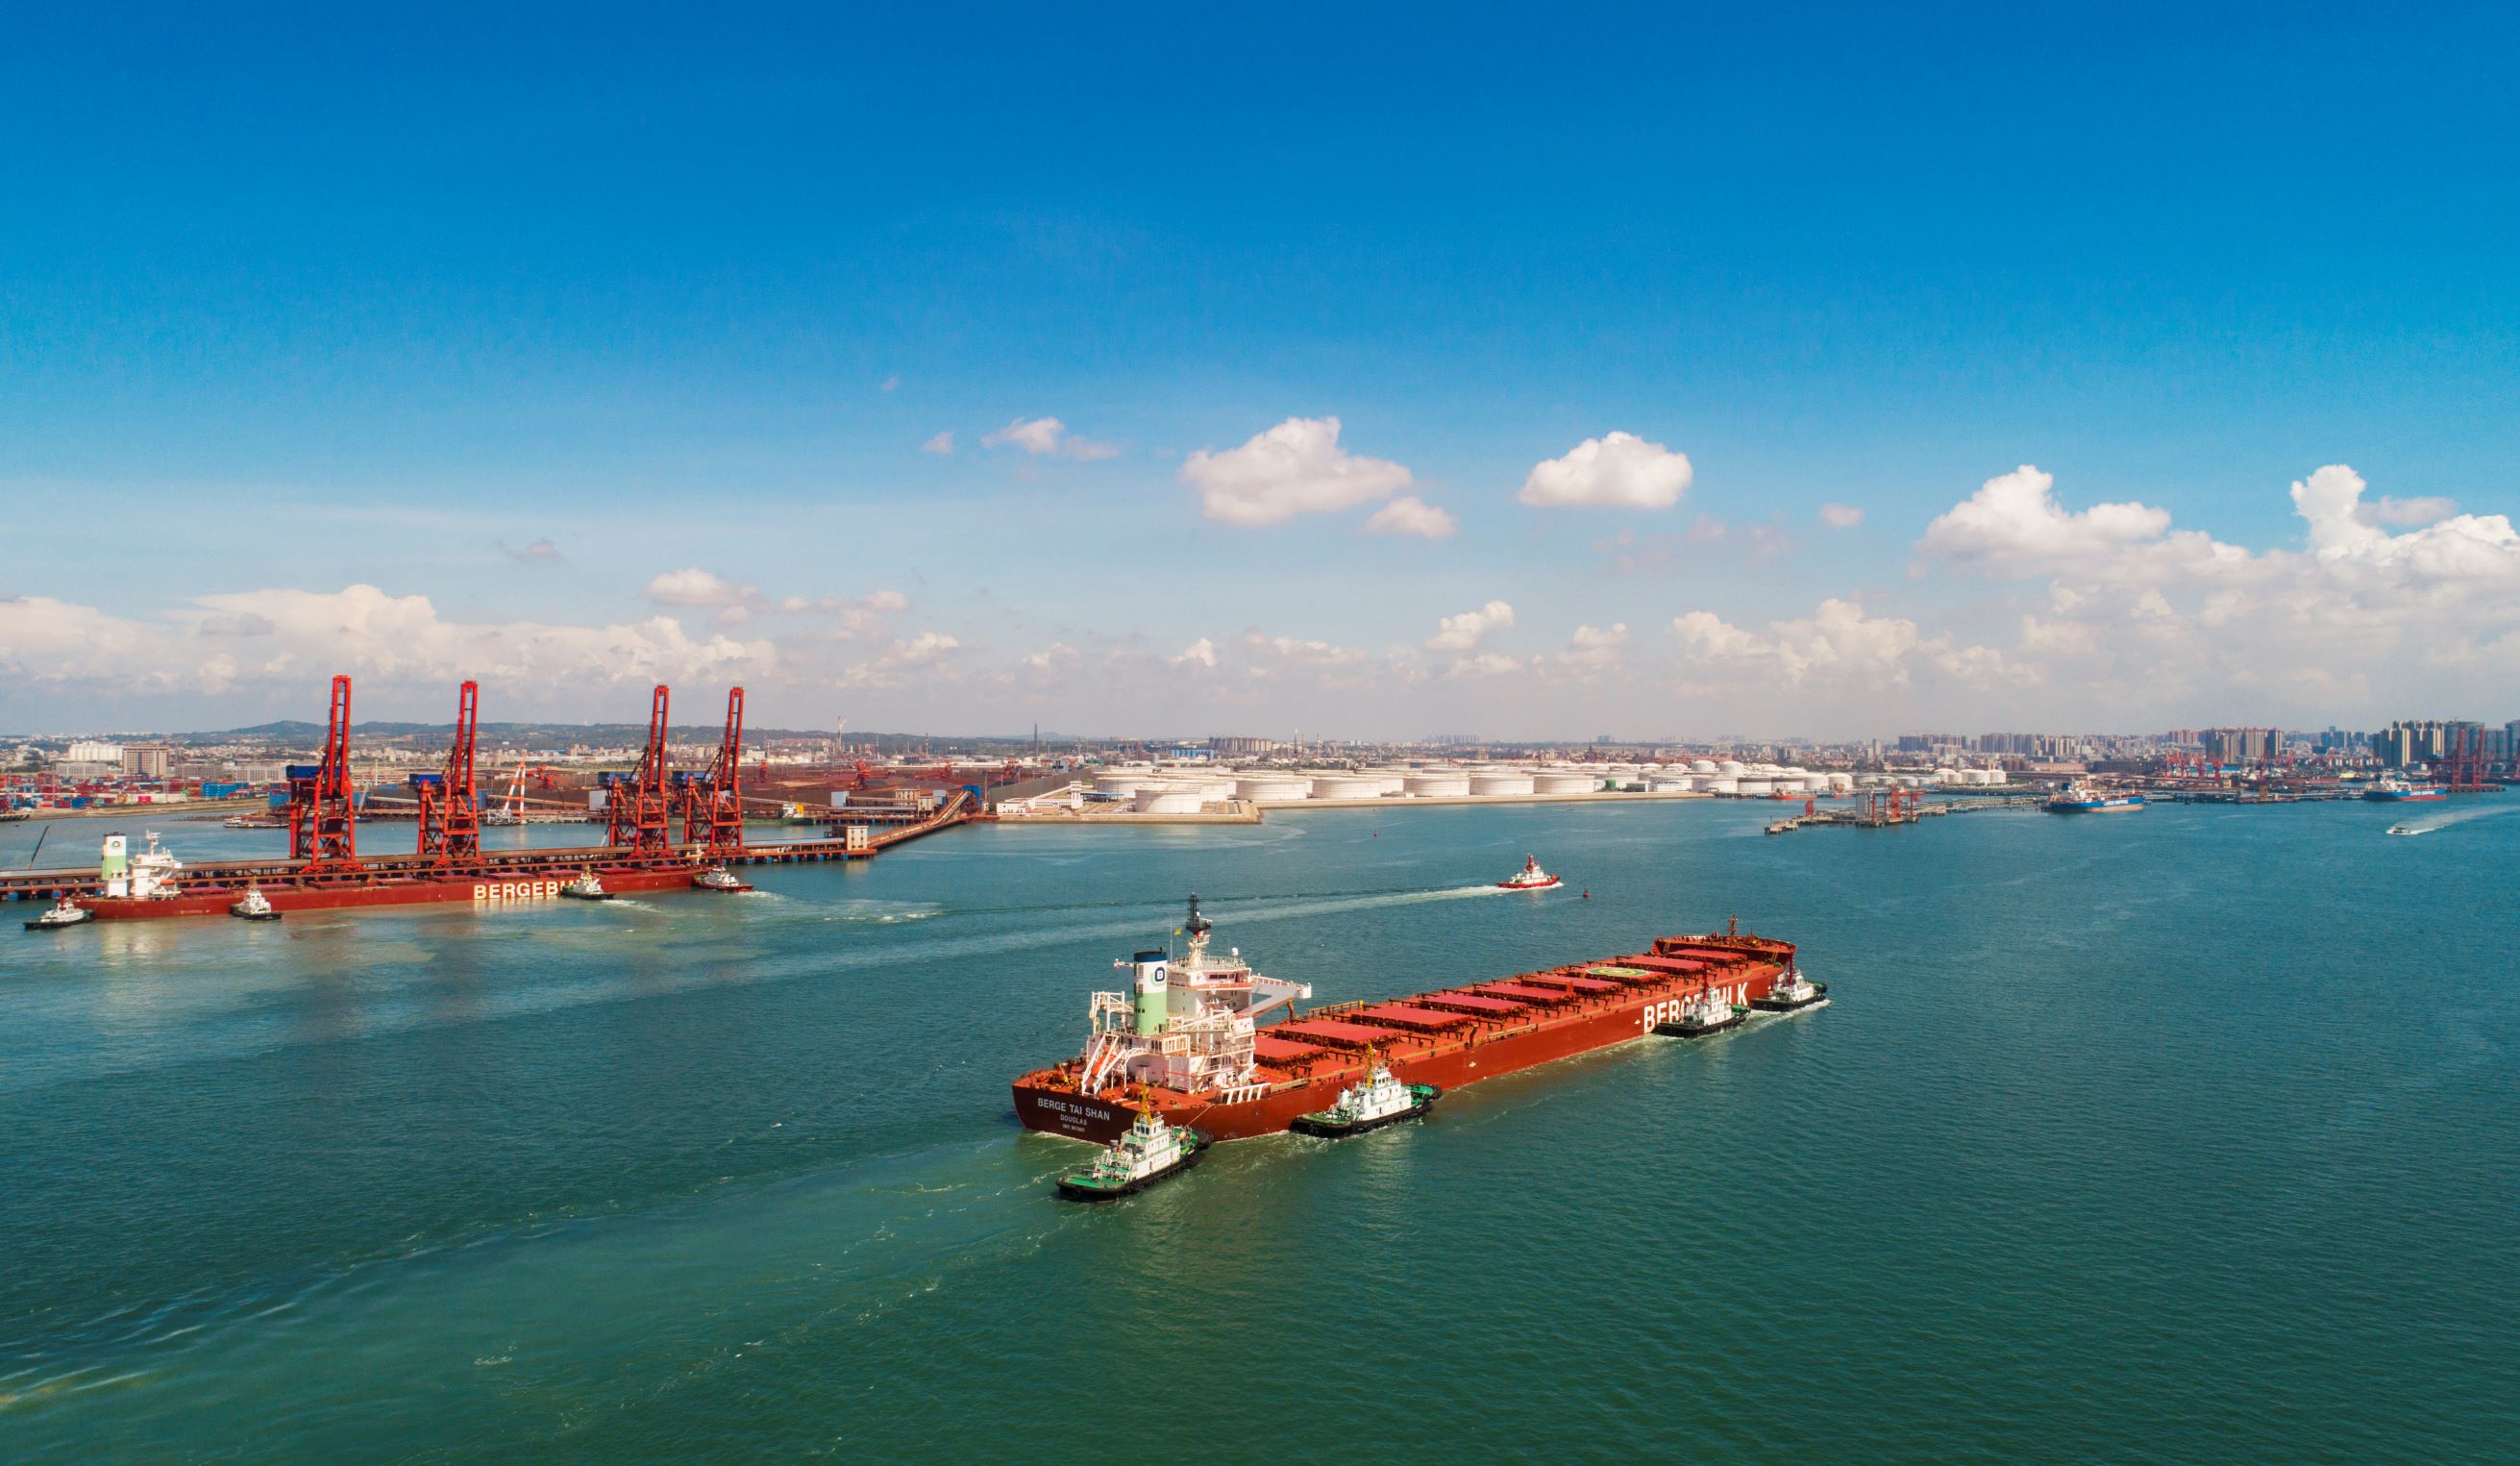 集装箱吞吐量1.22亿标箱 招商港口再创历史新高